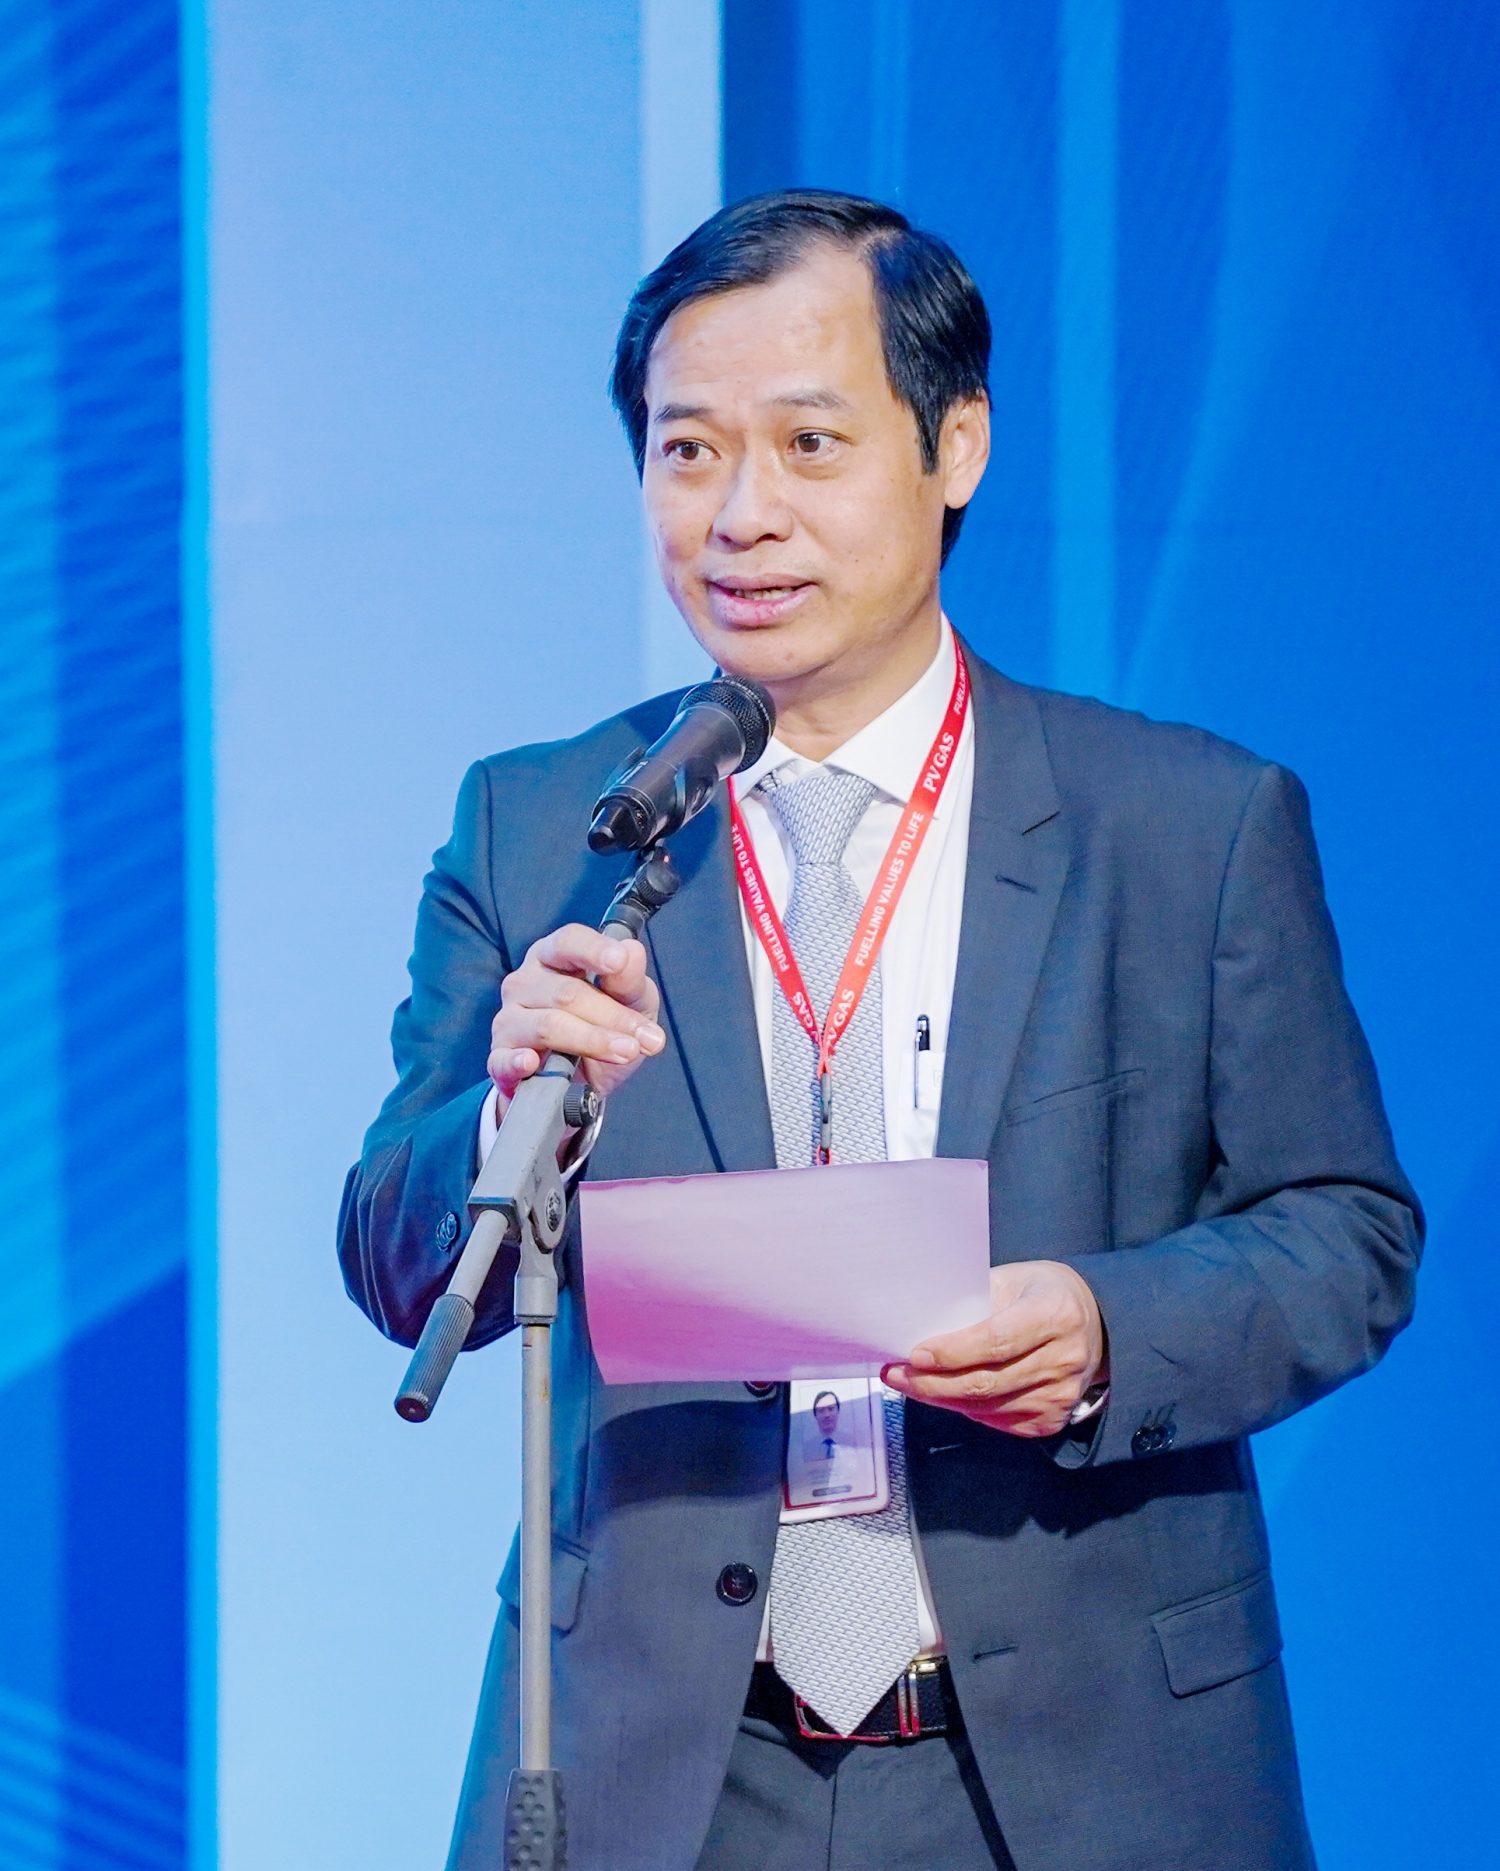 ồng chí Trần Xuân Thành – Chủ tịch Công đoàn PV GAS đọc phát động đợt thi đua đặc biệt, chào mừng năm mới 2022